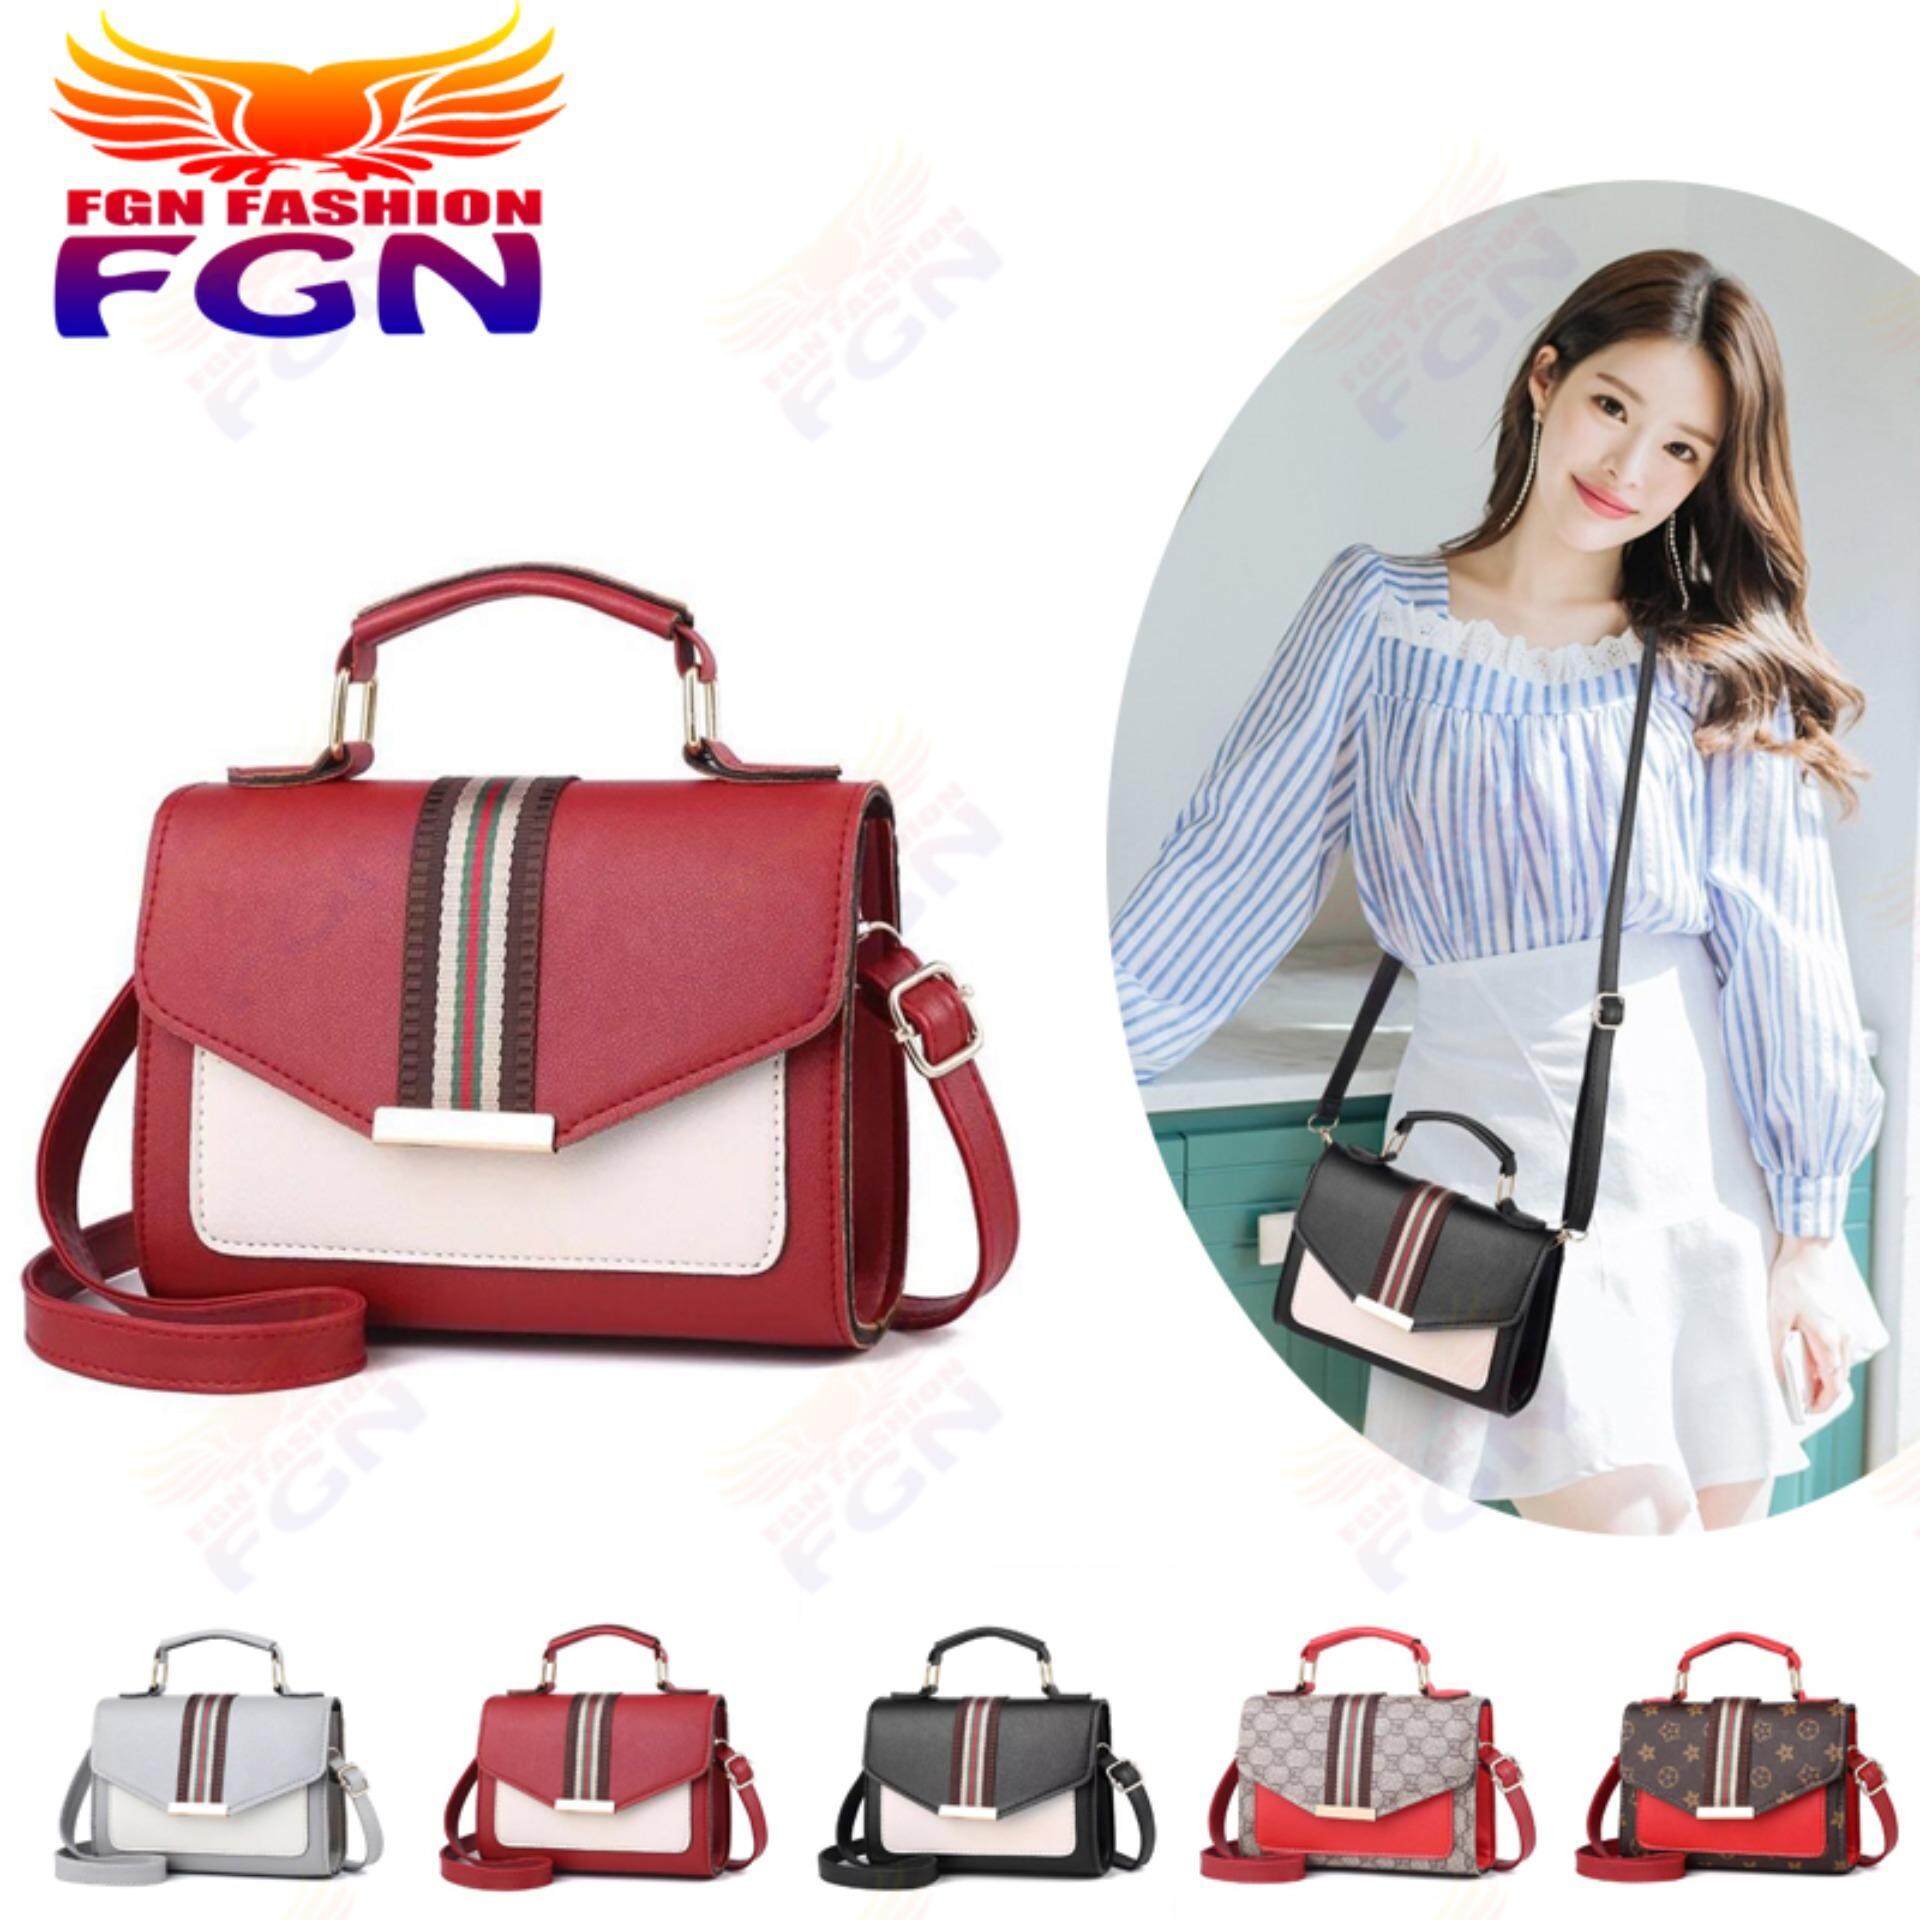  นครสวรรค์ FGN กระเป๋าสะพายข้าง กระเป๋าเป้ผ้าไนลอน รุ่น：FGN 072 มีสีให้เลือก5สี  สีแดง 